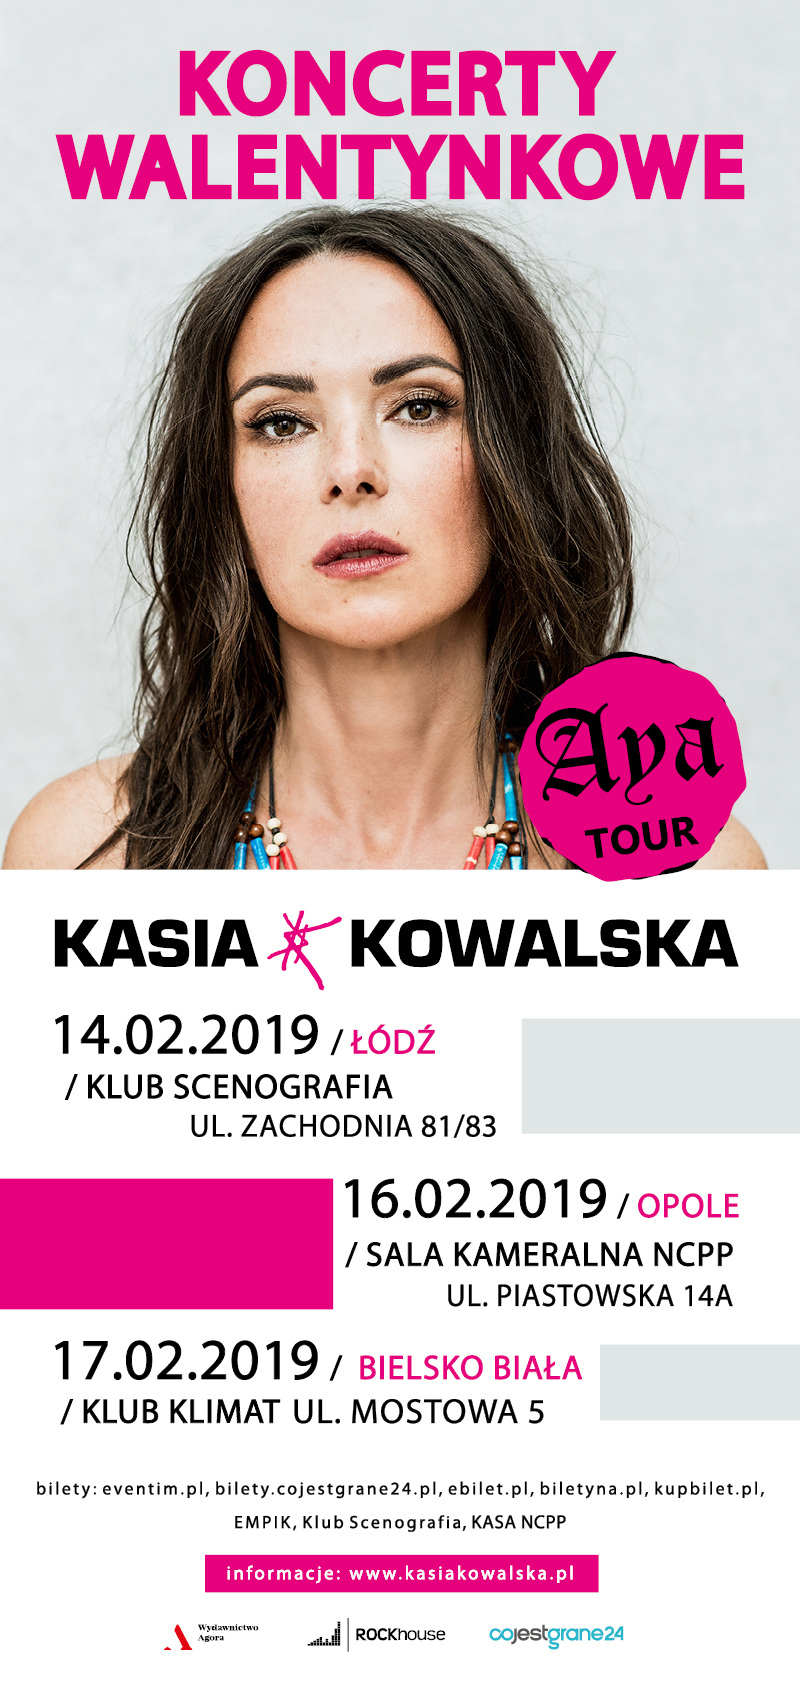 Kasia Kowalska zaprasza na walentynkowe koncerty